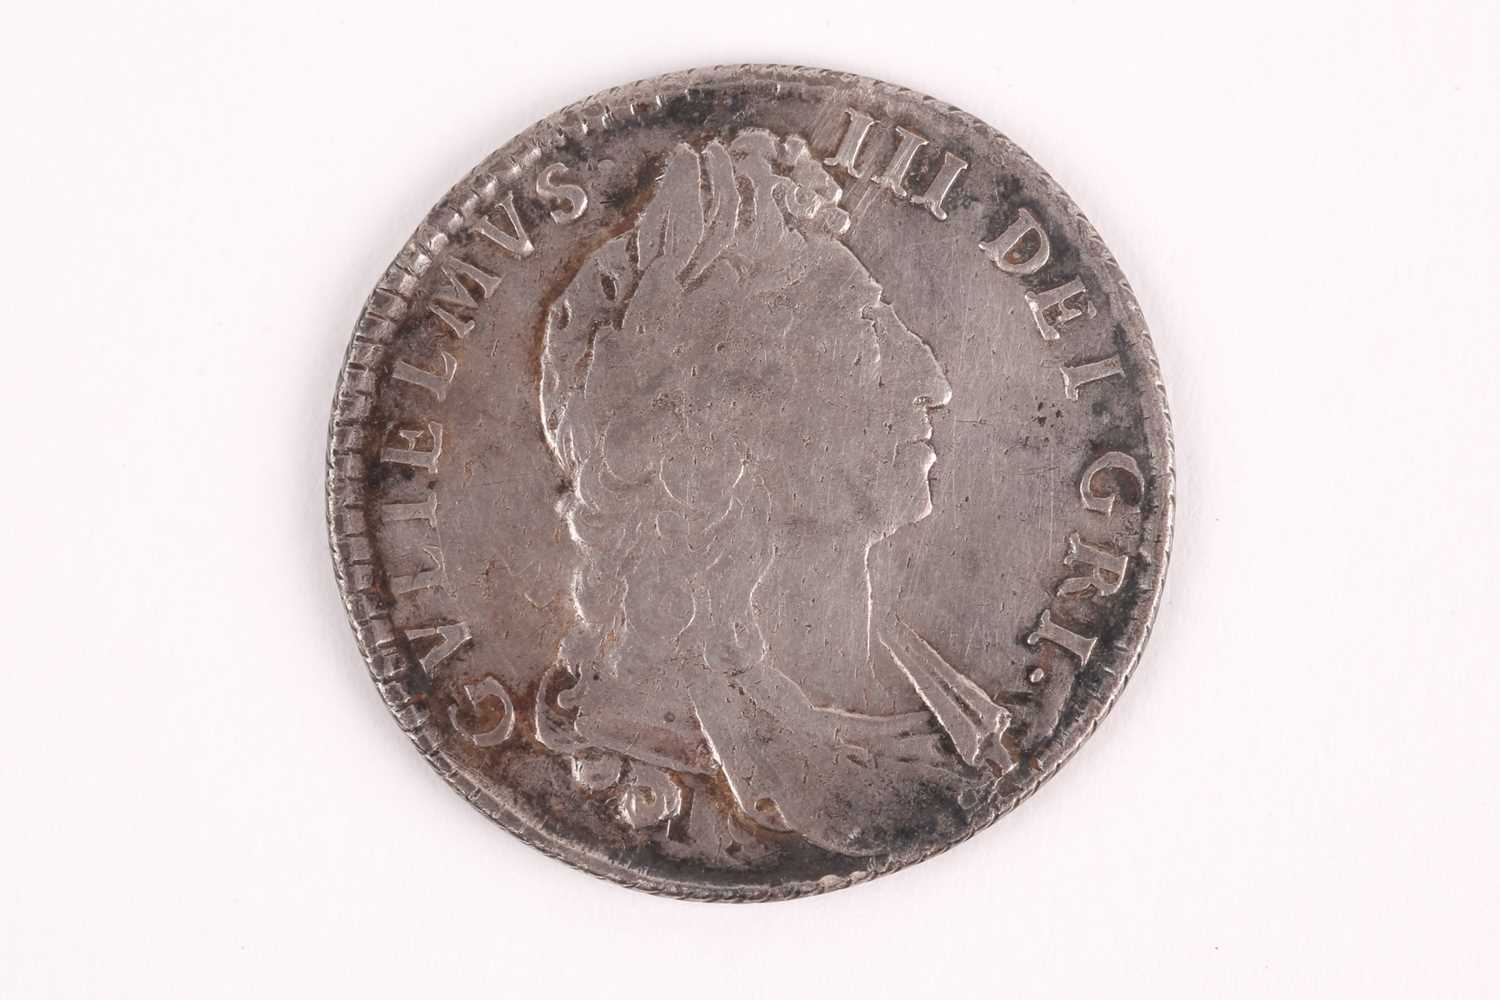 Lot 356 - William III shilling, 1697, error GRI for GRA, F+